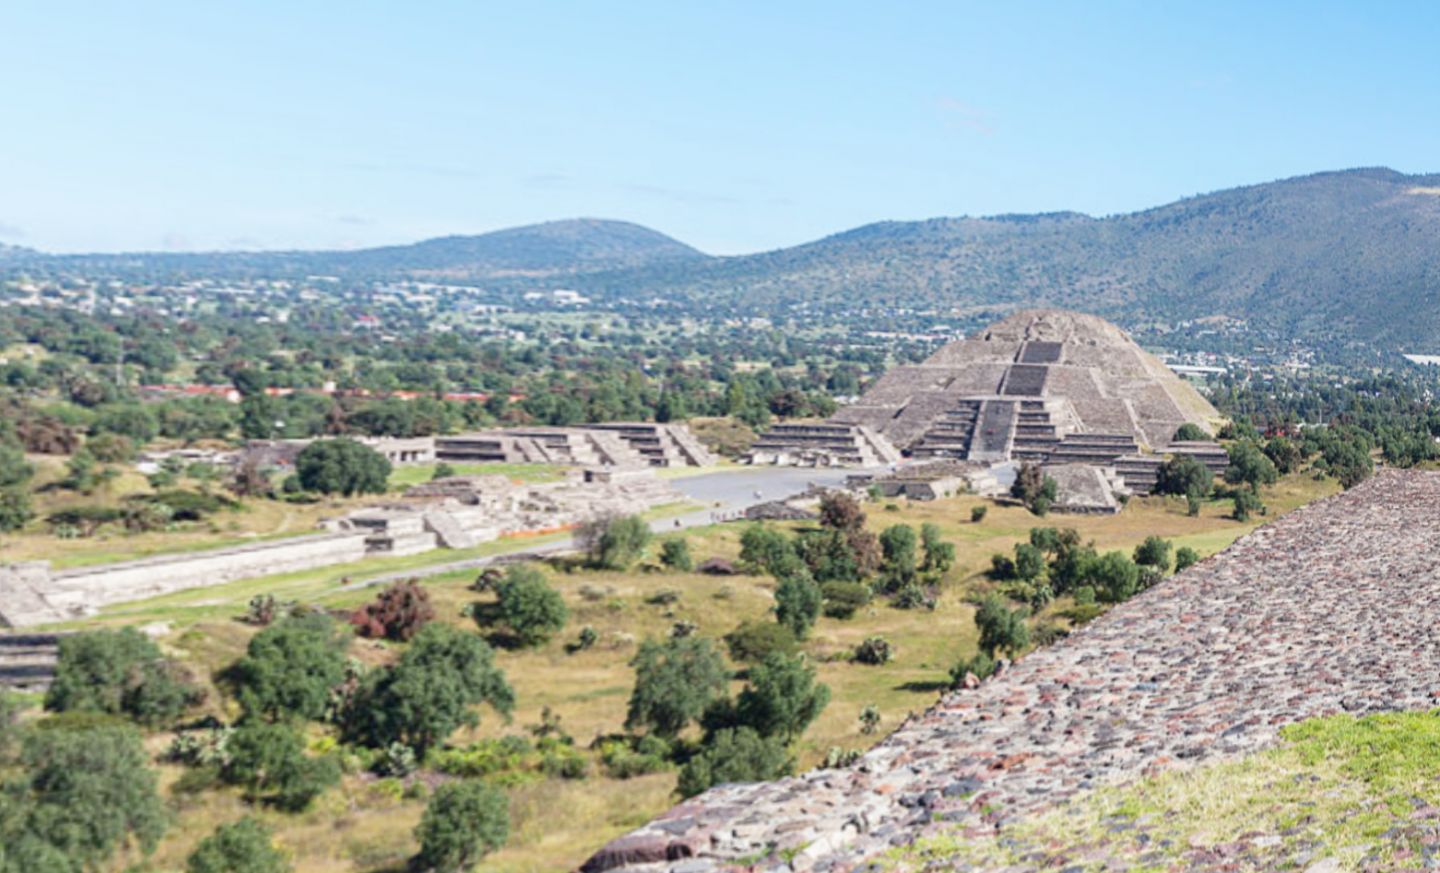 Sismologico Nacional reporta tres microsismos en San Martín de las Pirámides y Teotihuacán